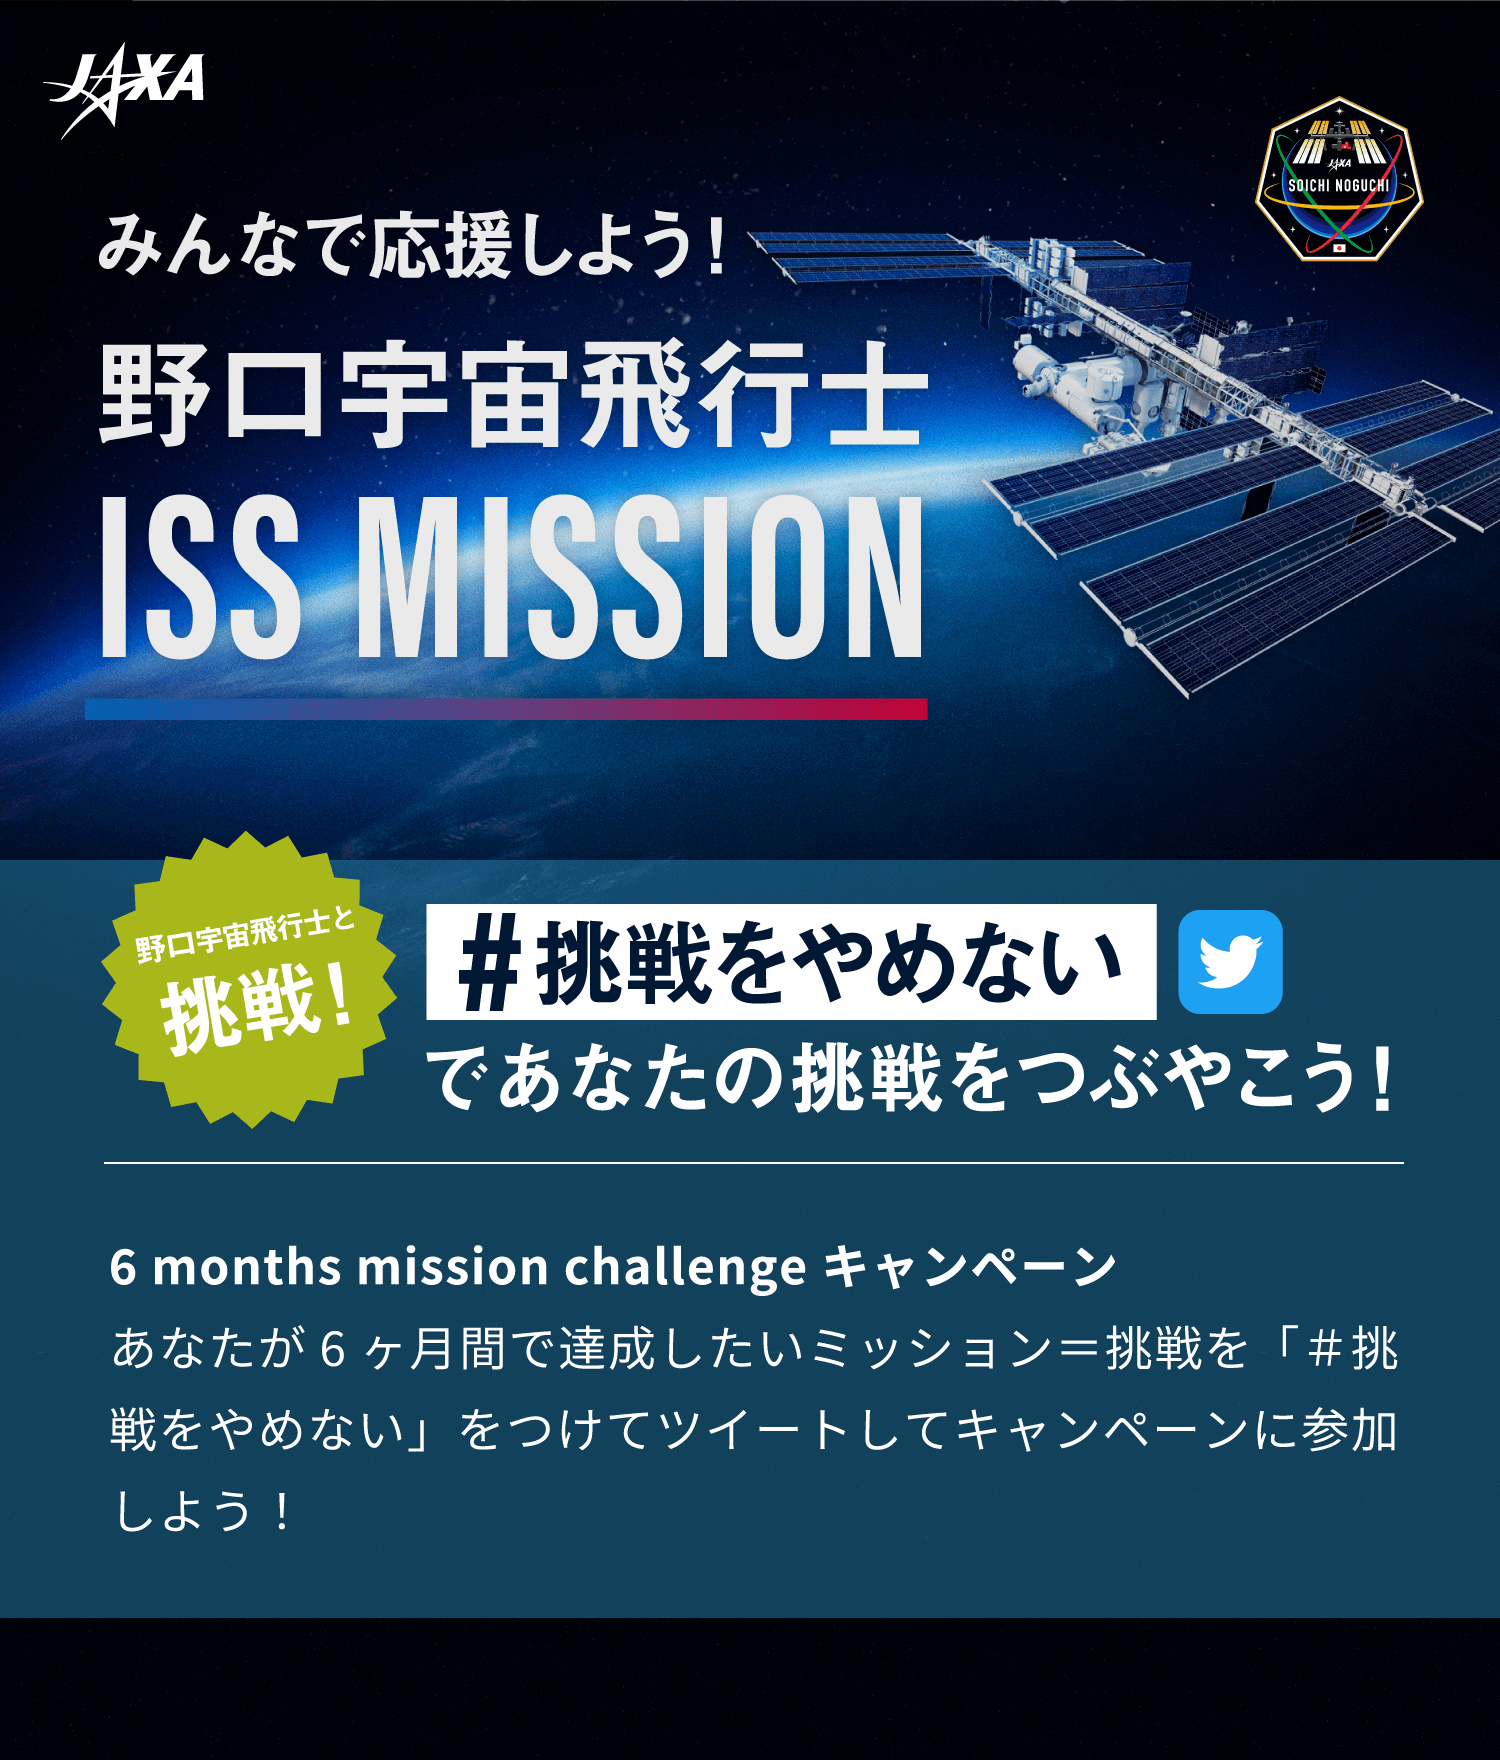 野口宇宙飛行士 ISS MISSION 打ち上げ生配信